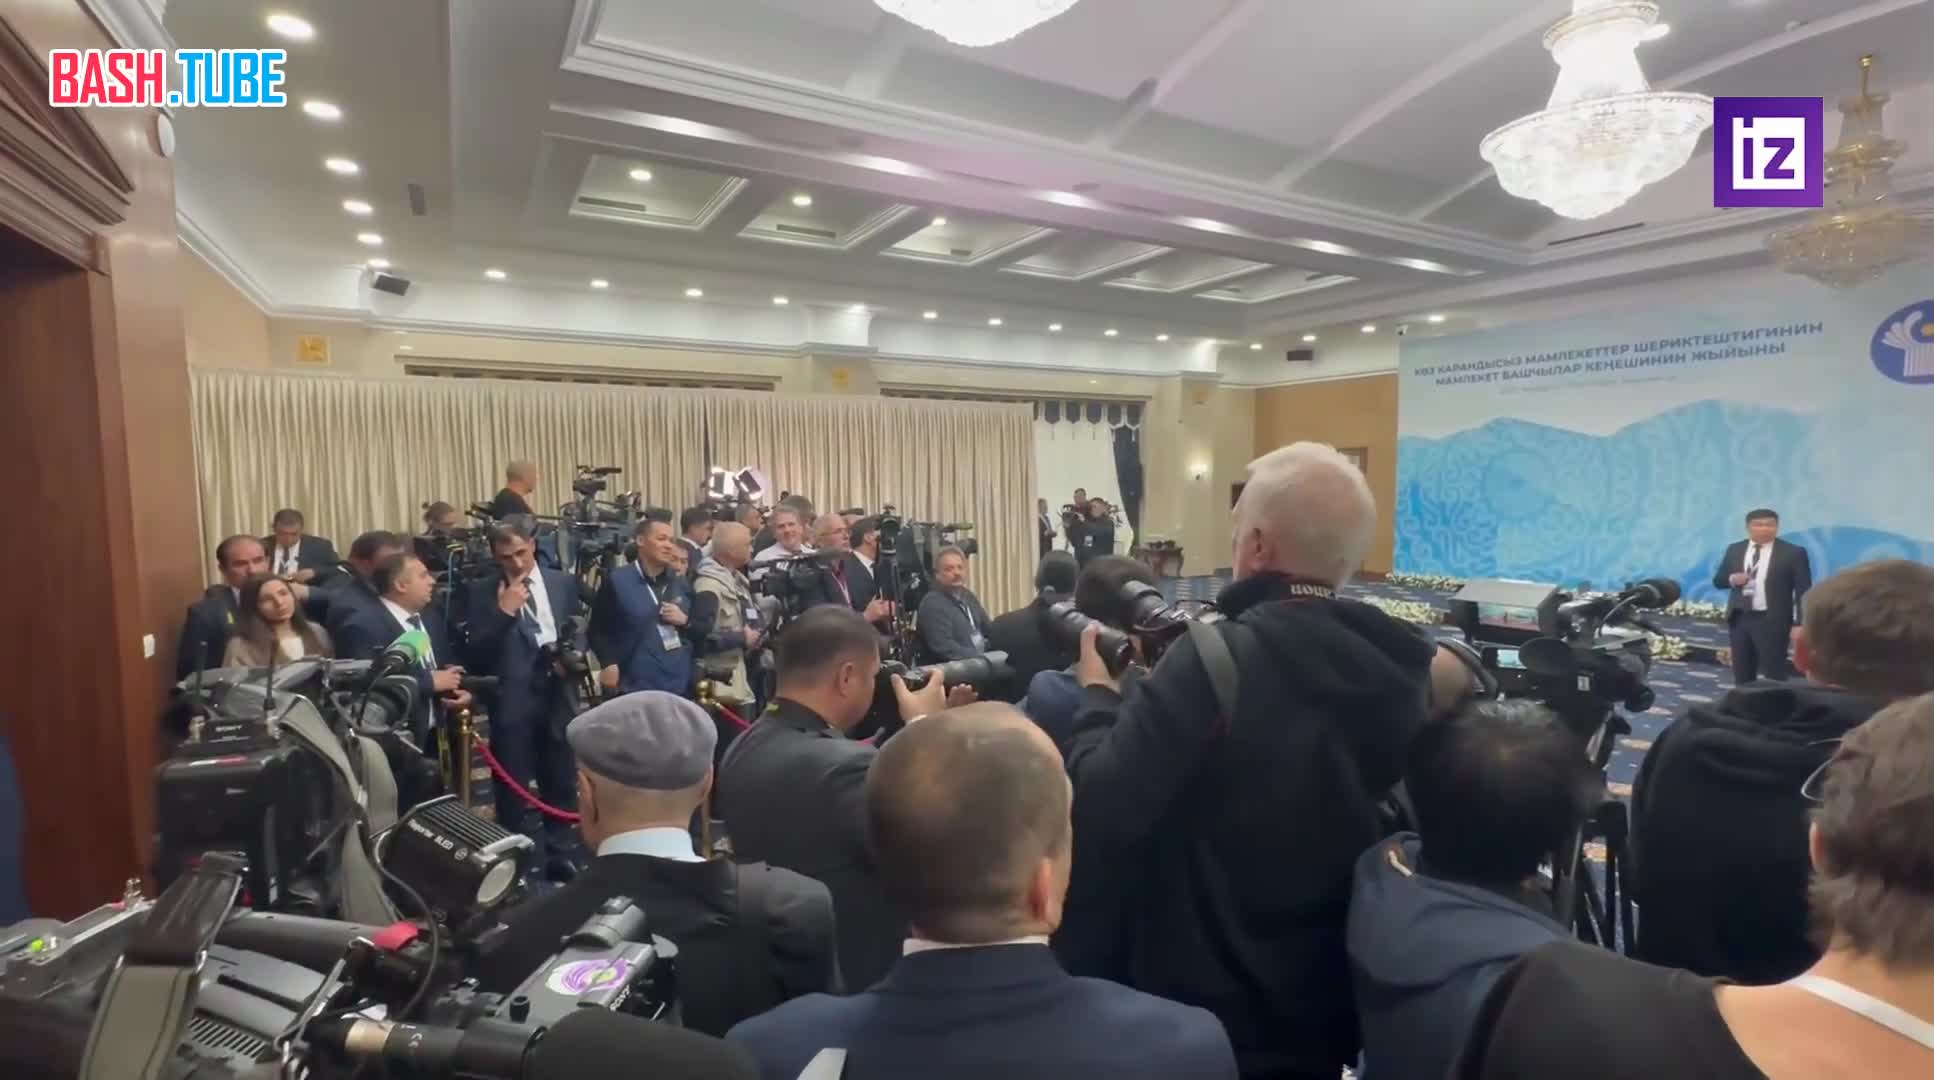  Корреспондент Алексей Лазуренко показал обстановку перед заседанием Совета глав государств СНГ в Бишкеке